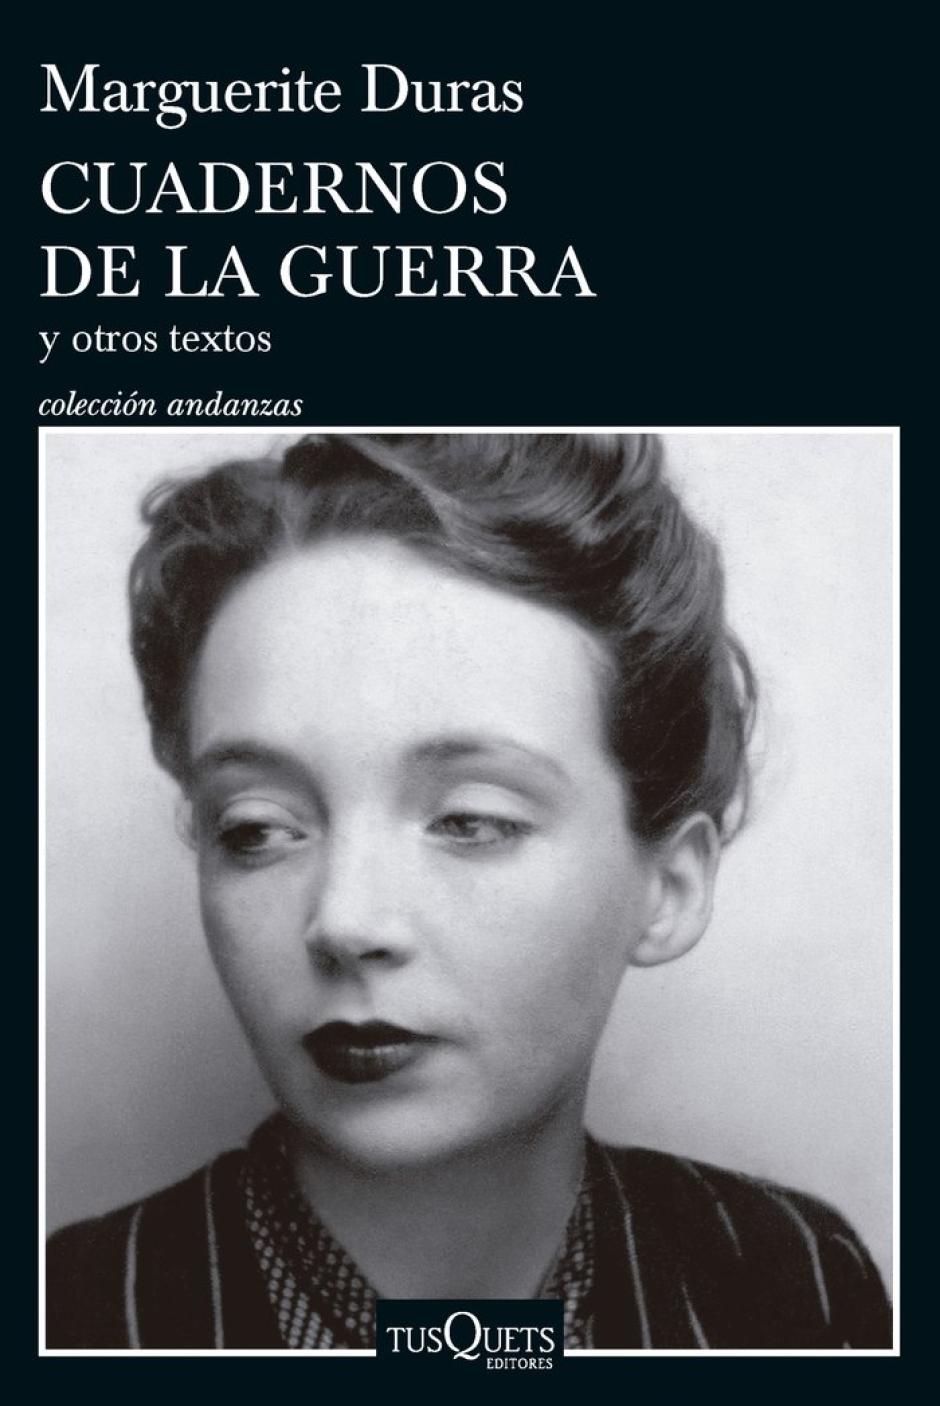 Cuadernos de la guerra, Marguerite Duras